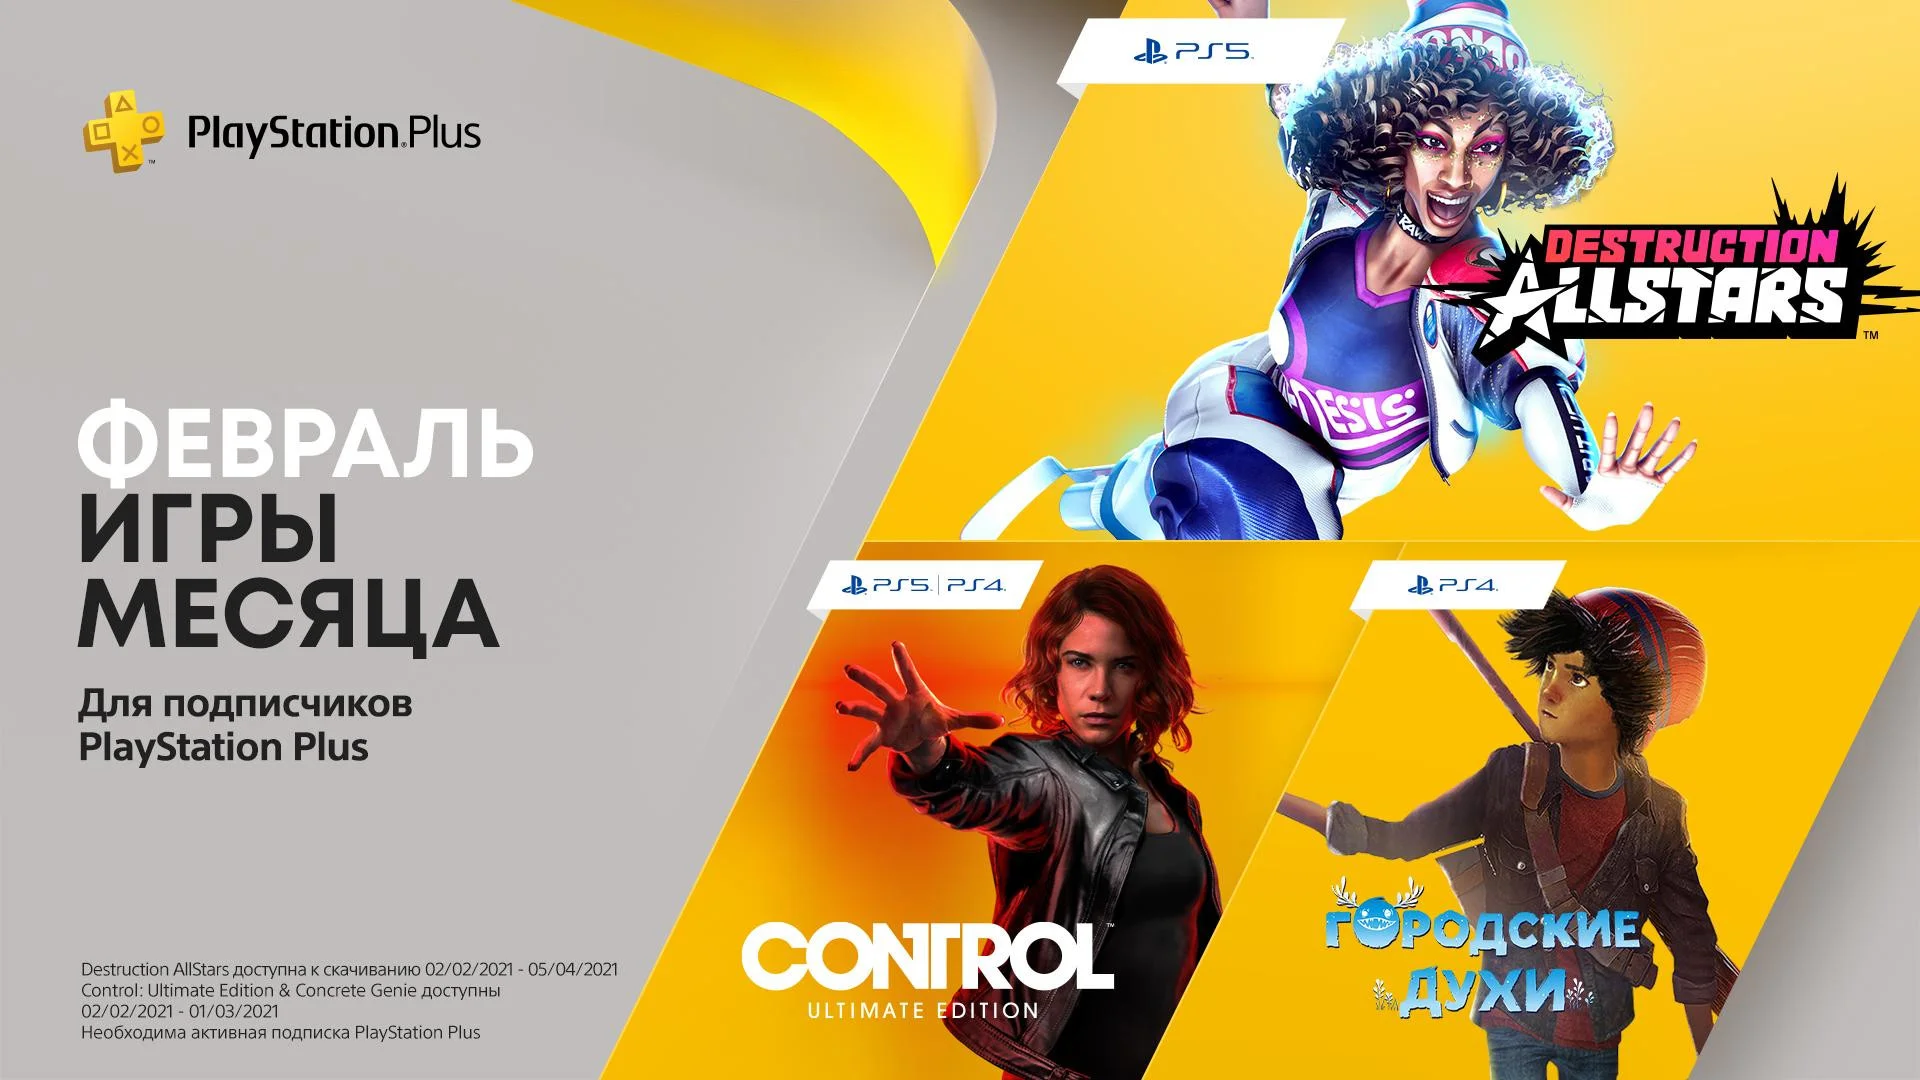 В февральский PS Plus вошли две игры для PS5, включая Control: Ultimate Edition - фото 1